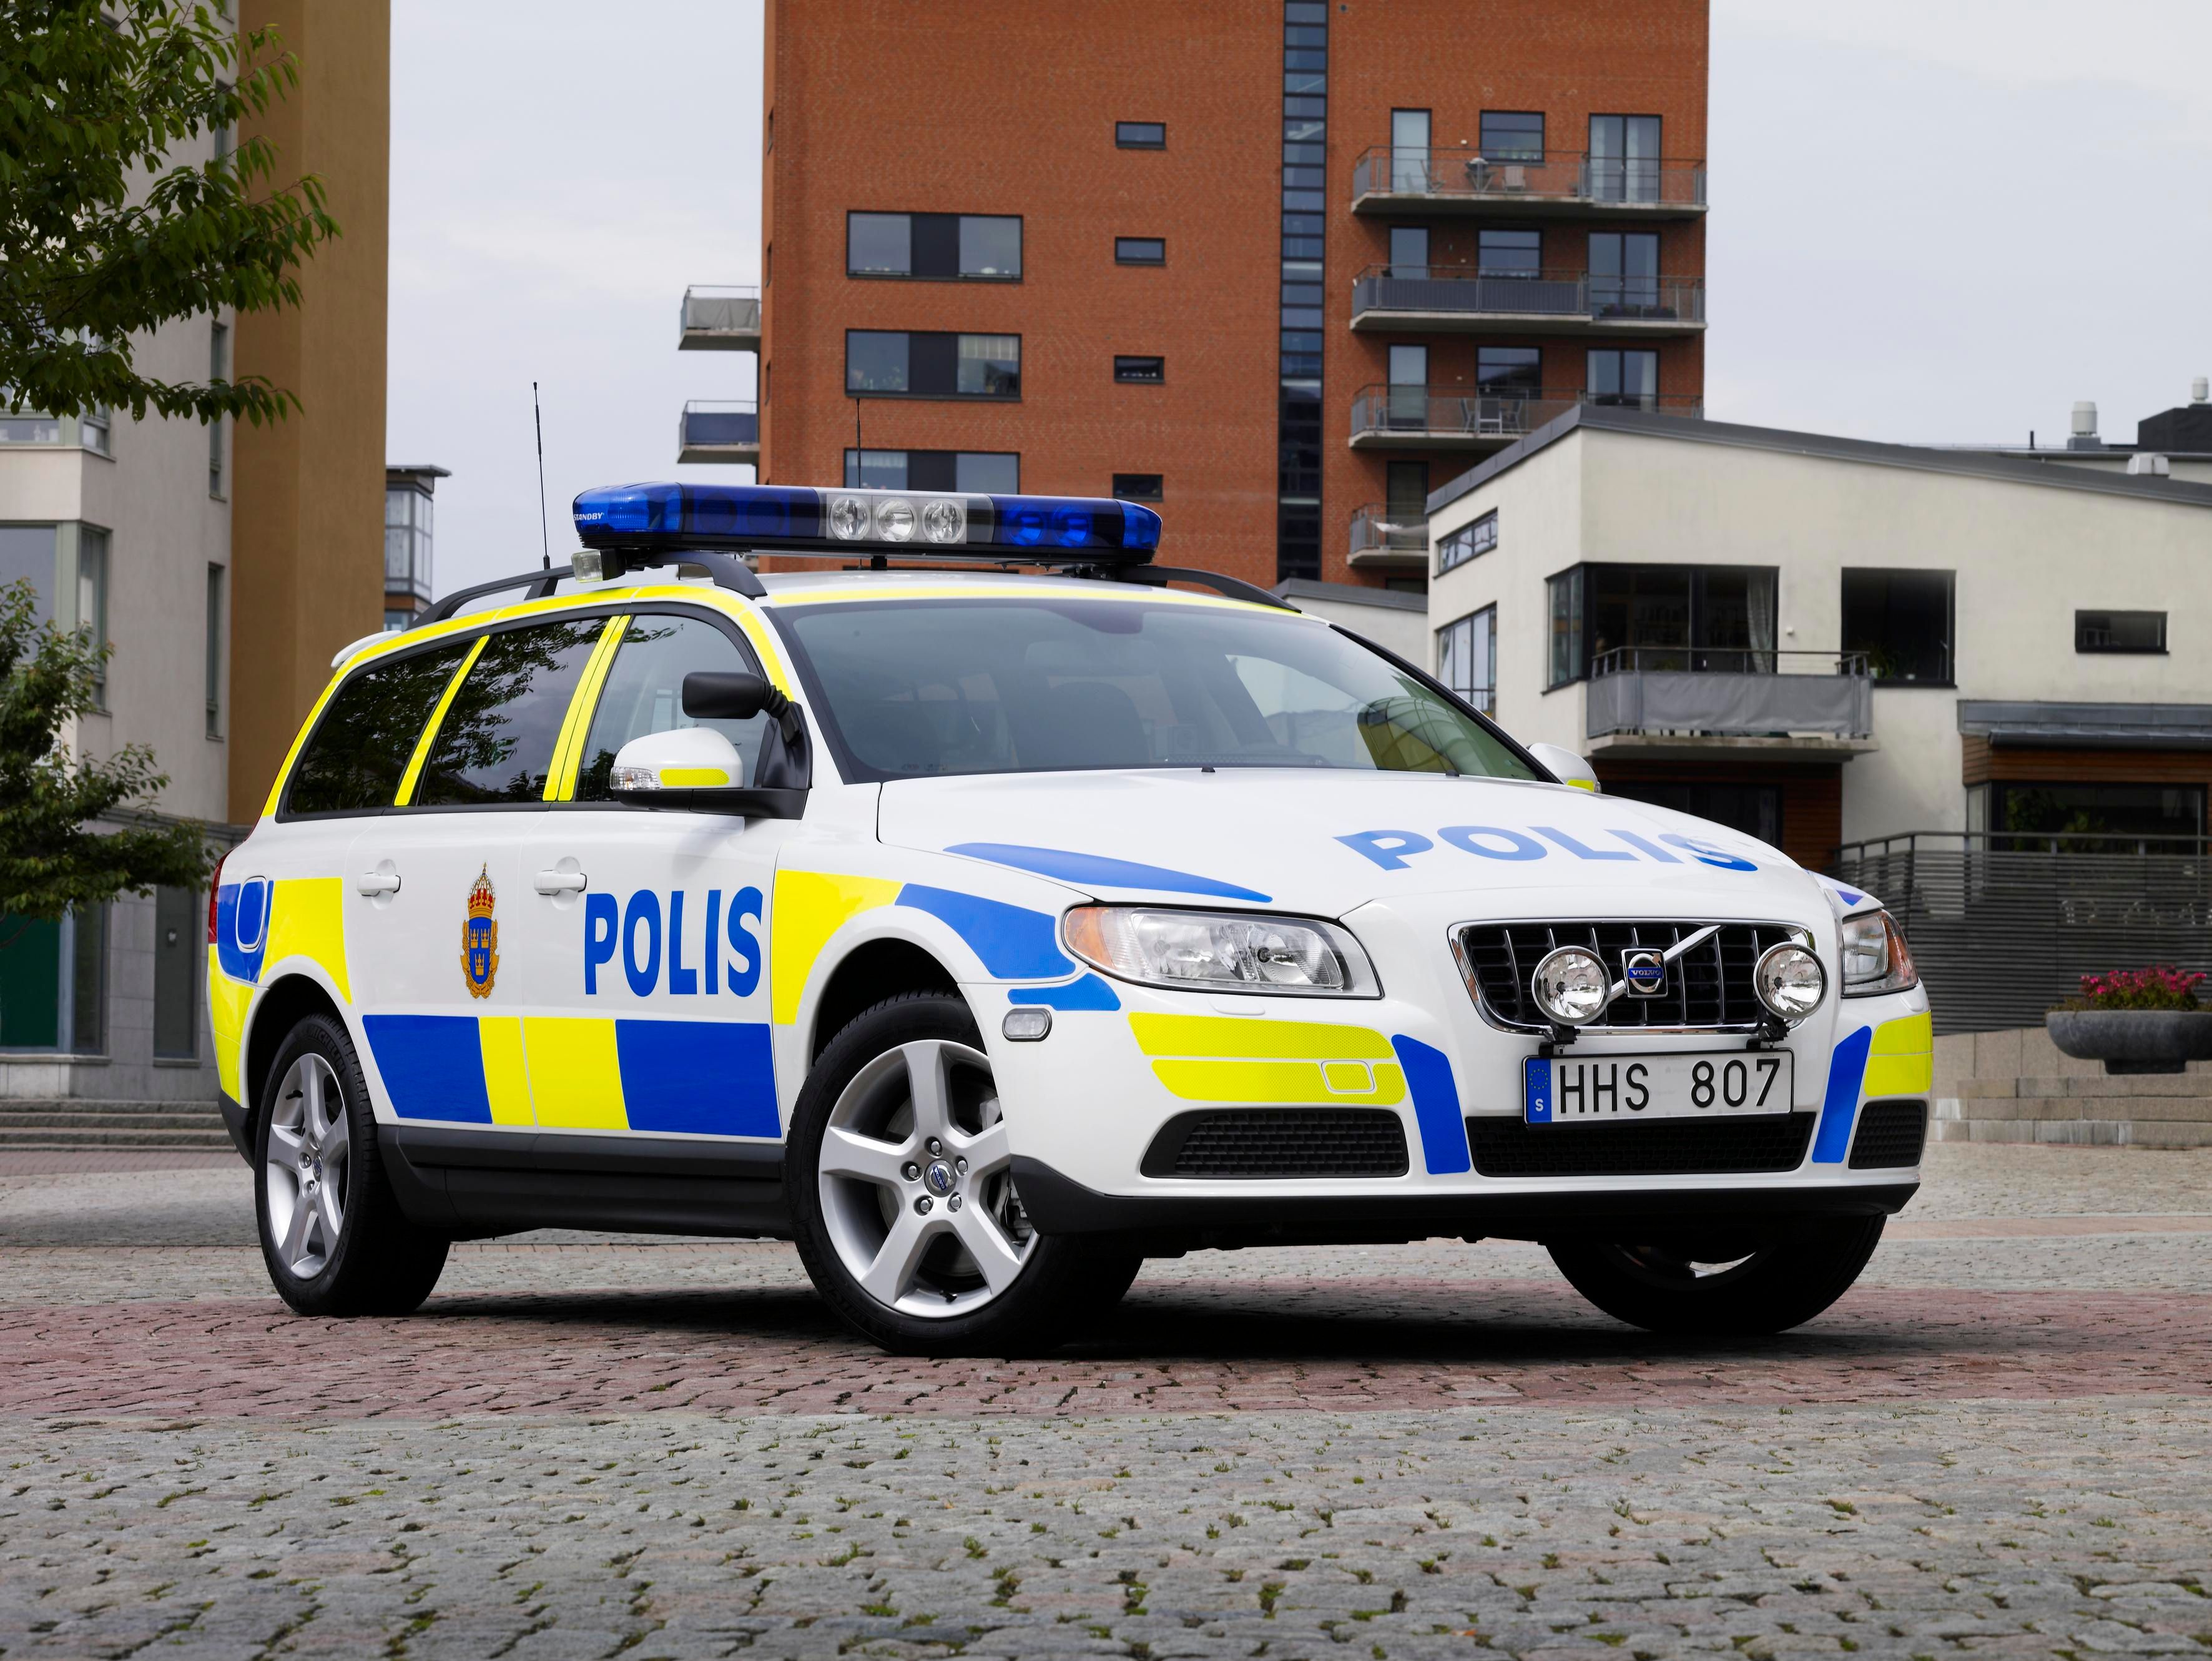 2007 Volvo V70 Police Car